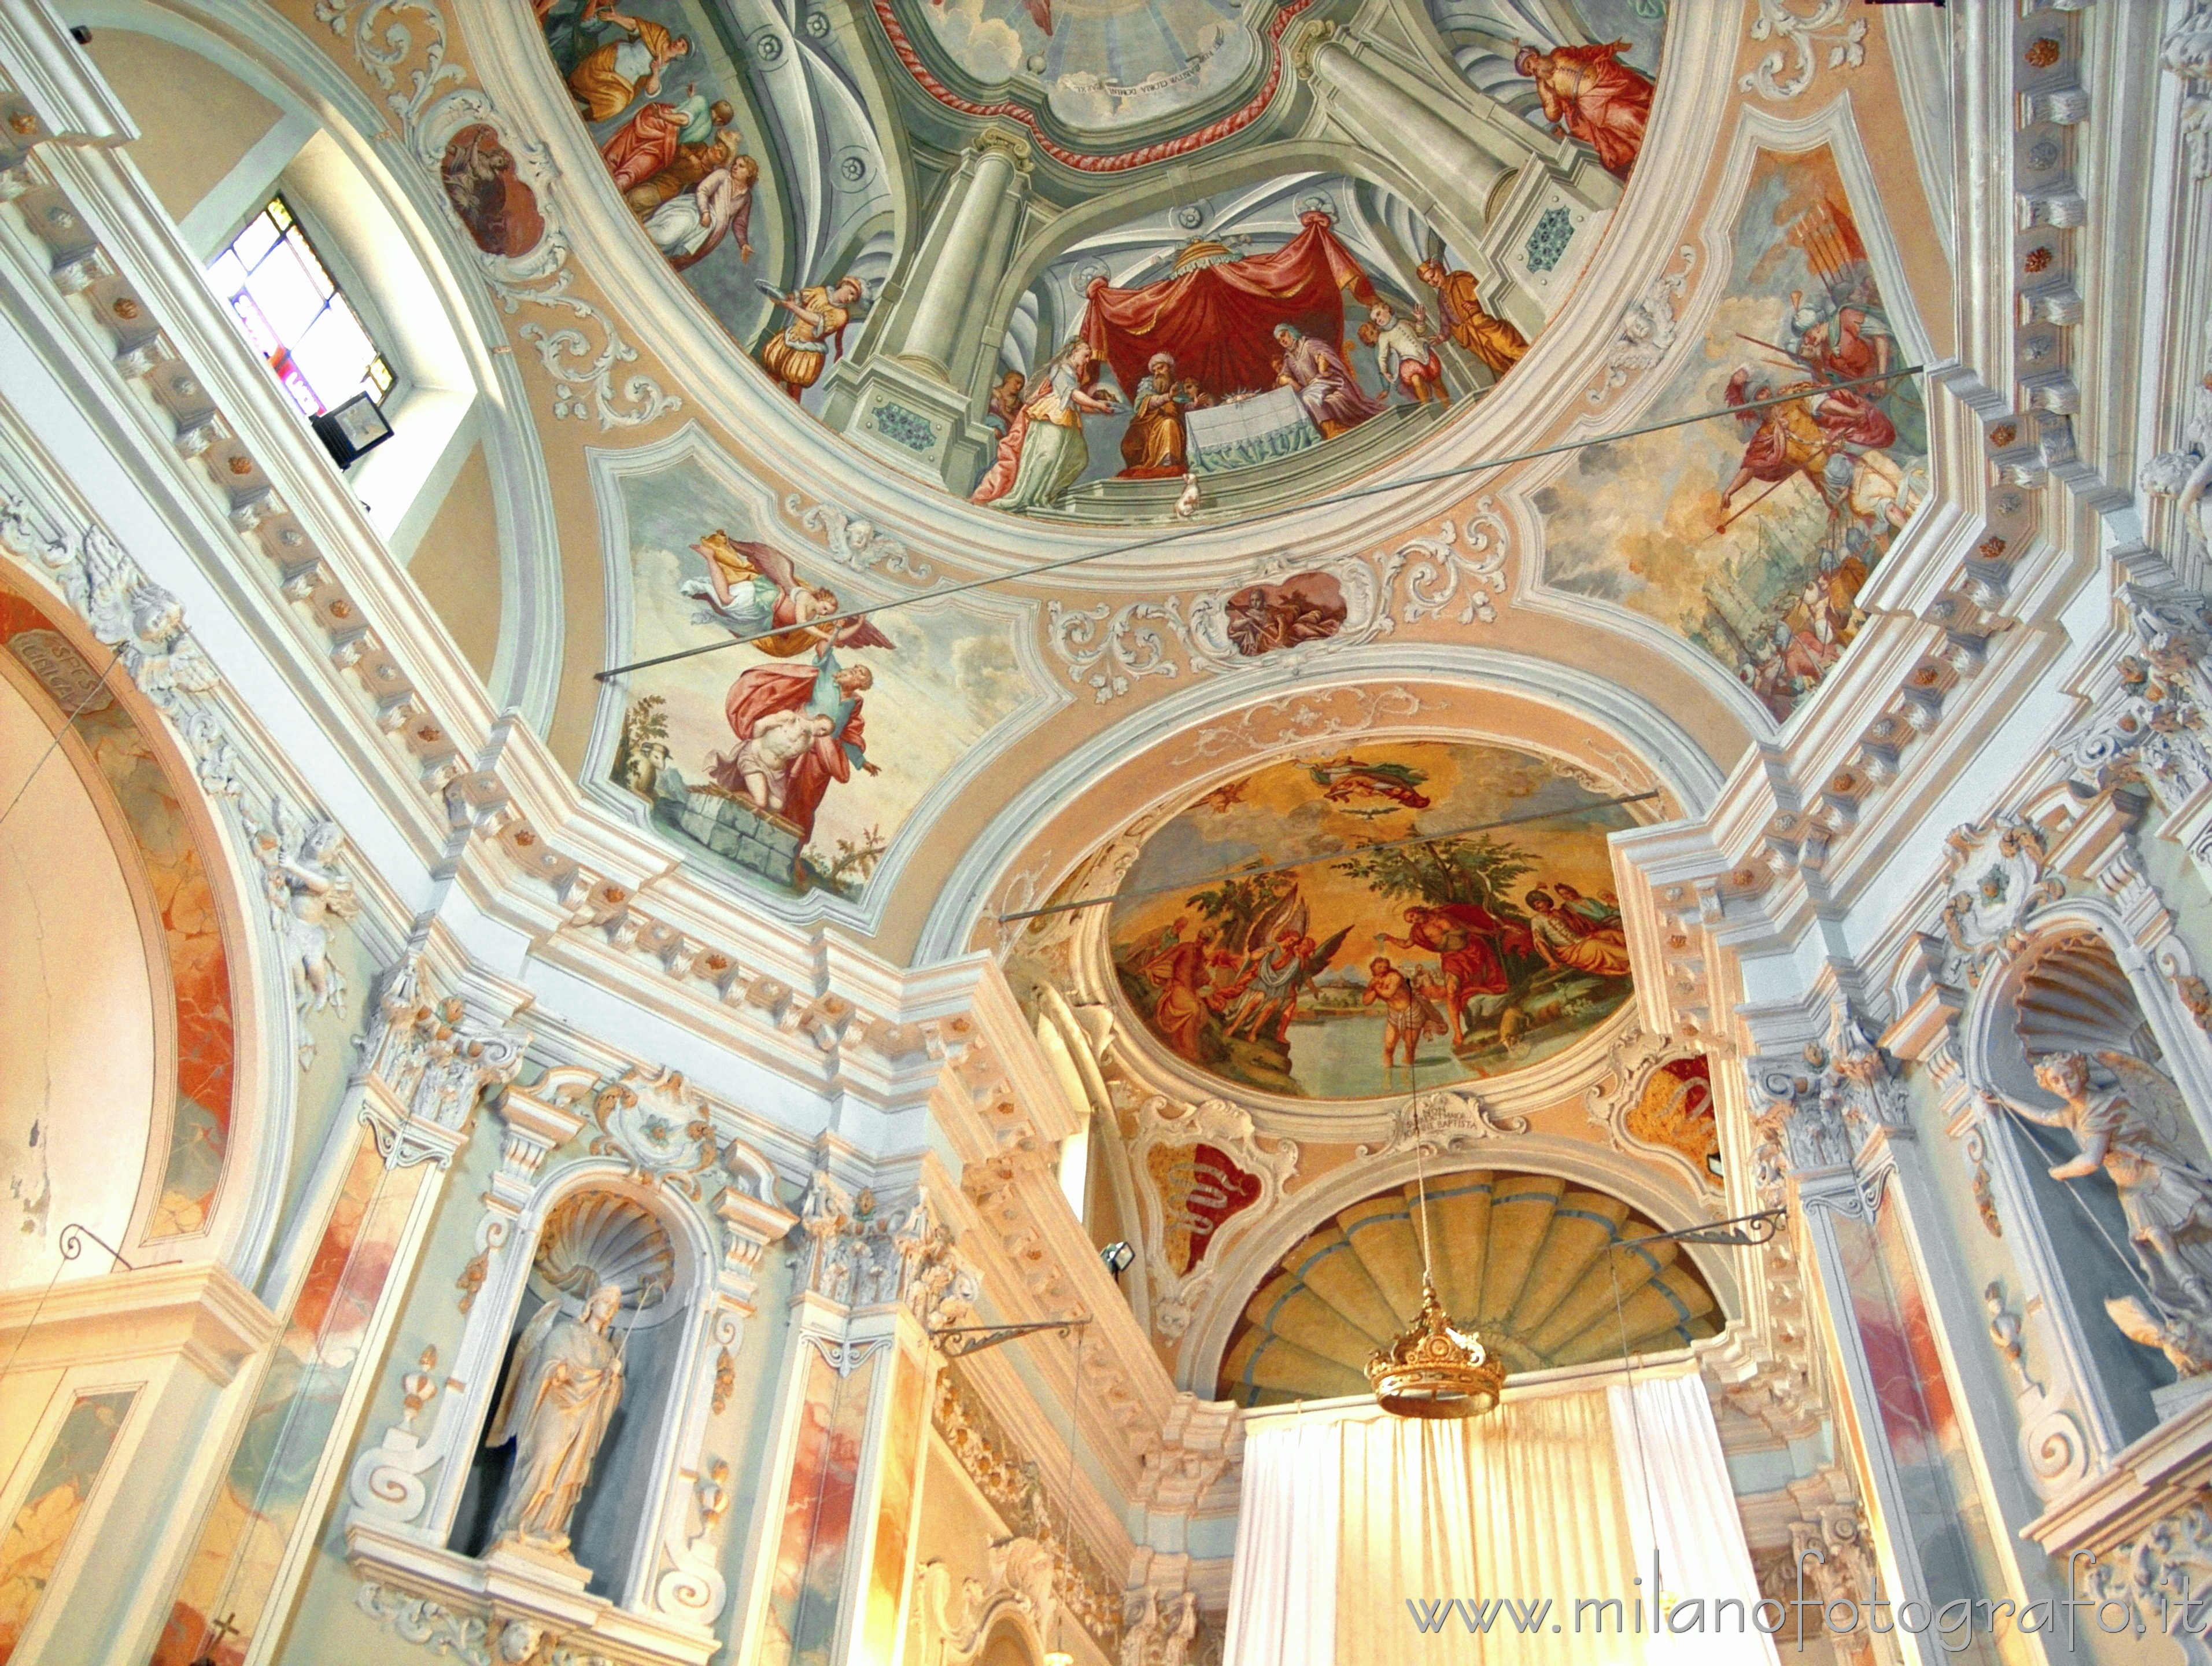 Monte Isola (Brescia, Italy): Ceiling of the Church of San Giovanni in location Corzano - Monte Isola (Brescia, Italy)